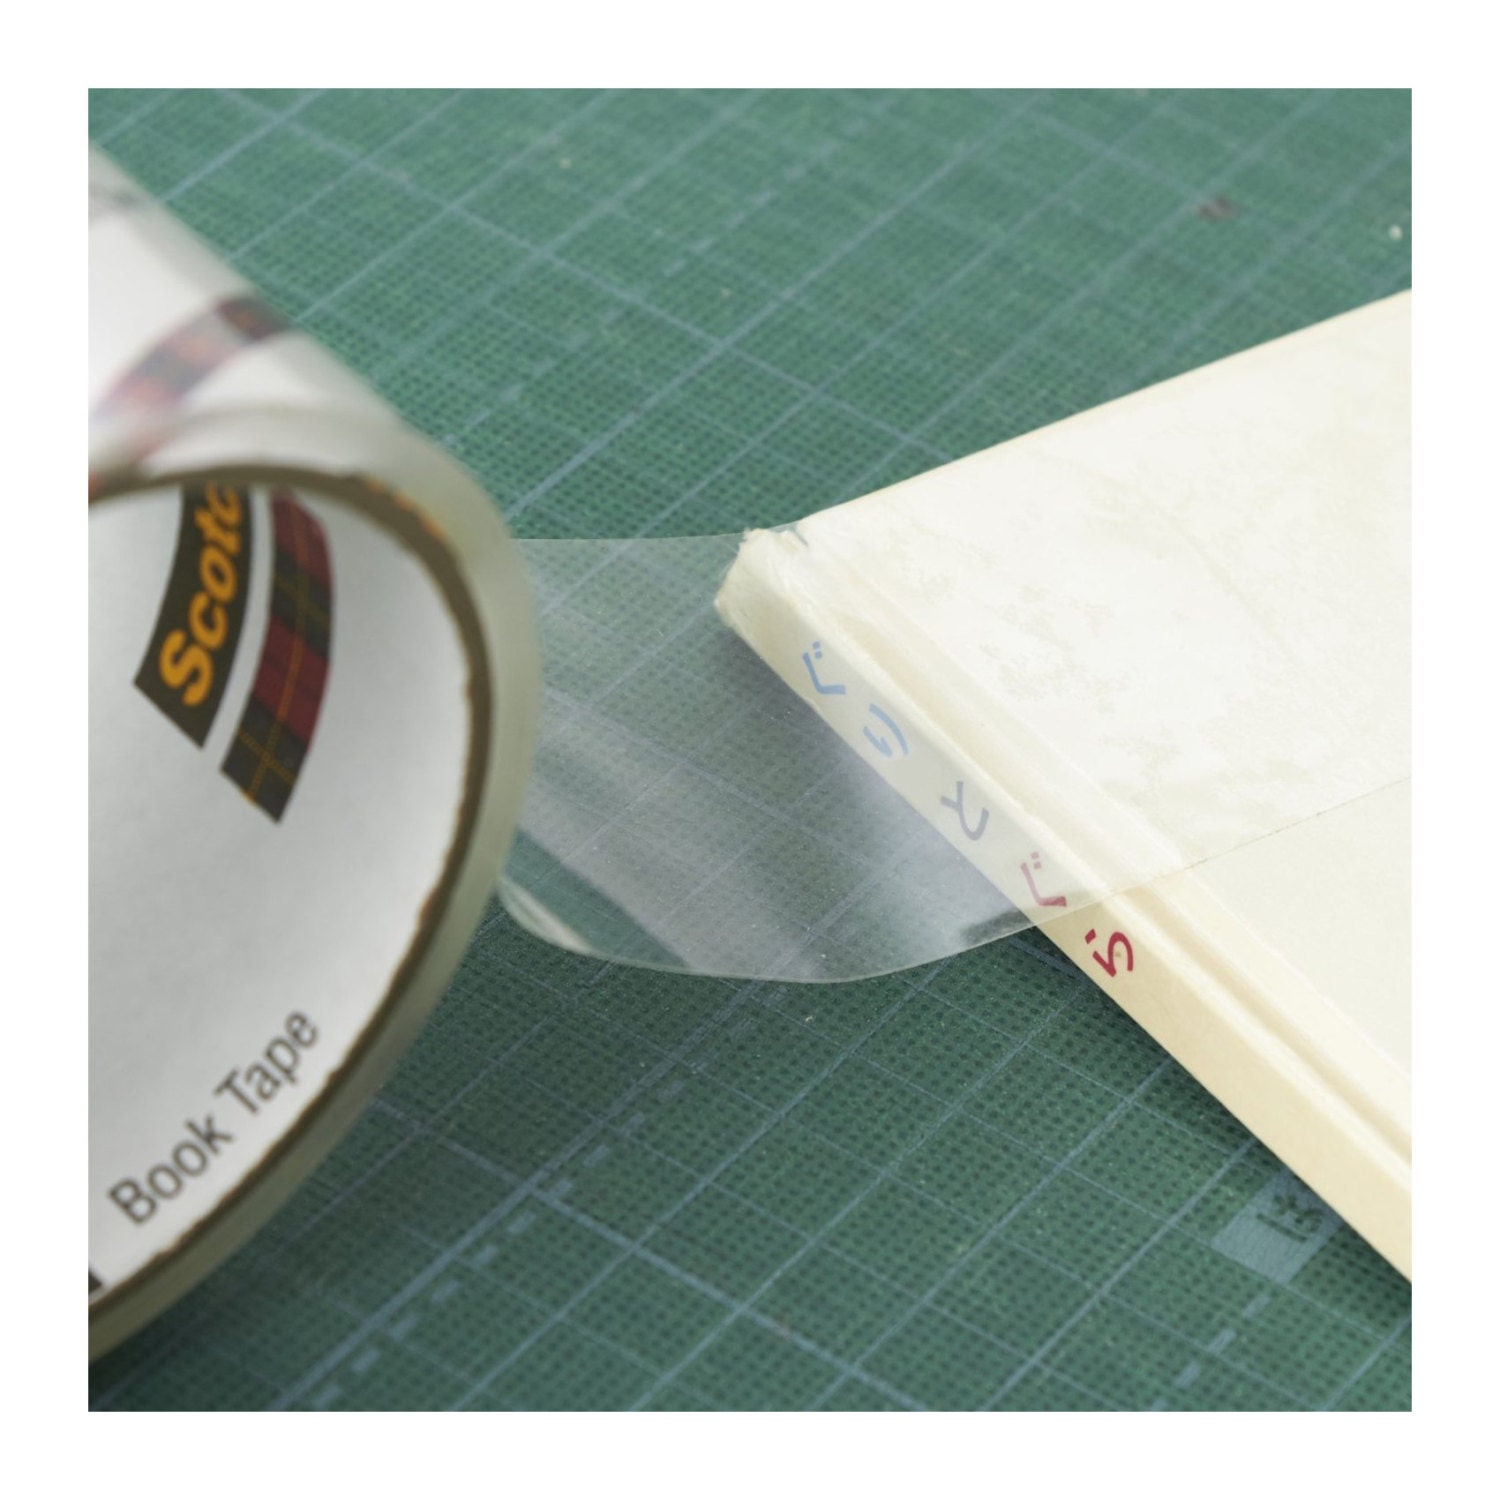 Scotch® Book Repair Tape, 845-36-12, 1.5 in x 15 yd (3.8 cm x 13.7 m)